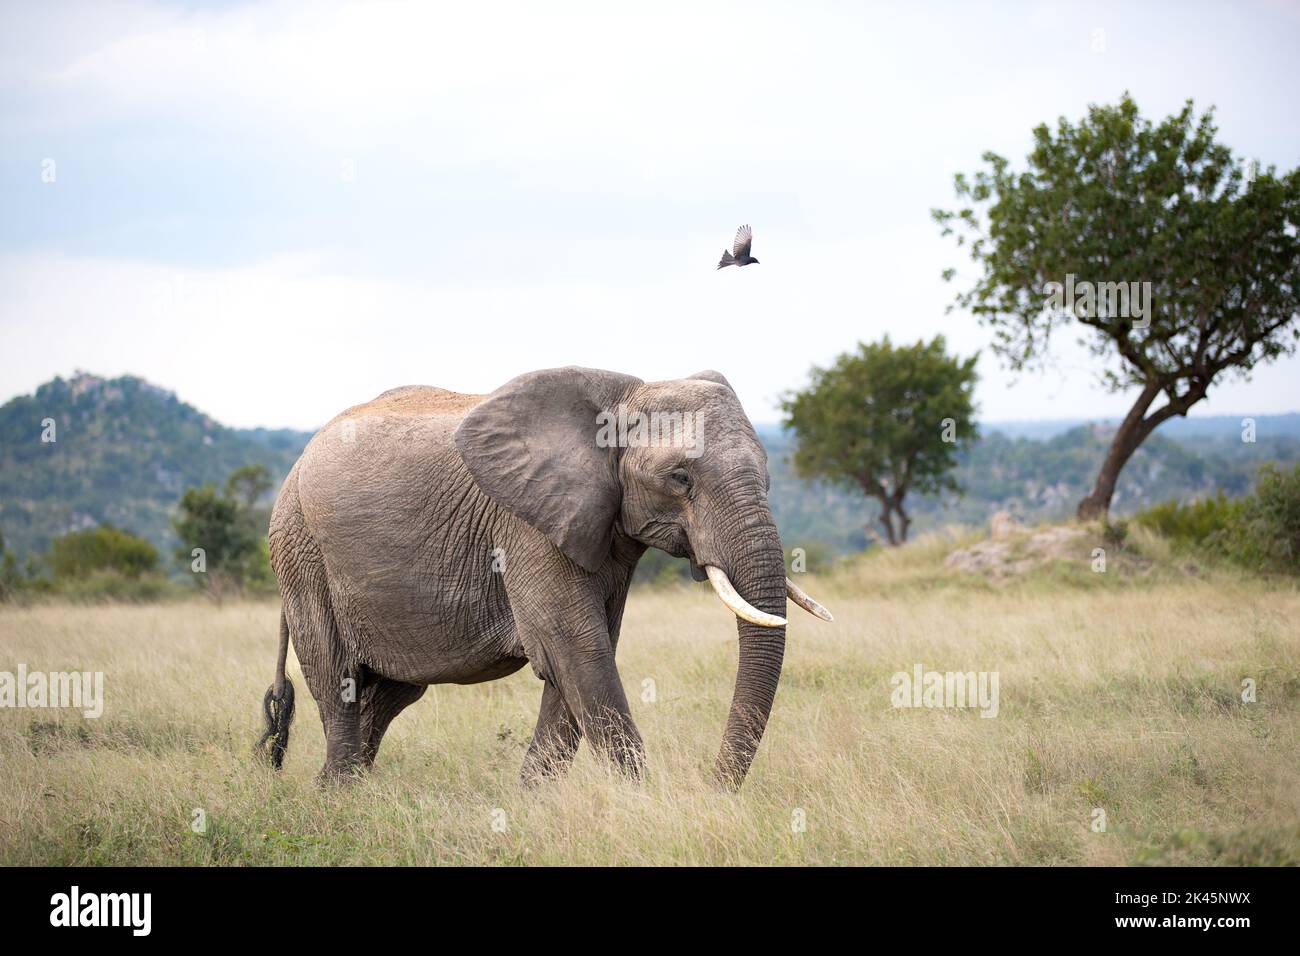 Ein Elefant, Loxodonta africana, wandert durch Gras, während ein Gabelschwanz-Drongo, Dicrurus adsimilis, in Farbe über ihn fliegt Stockfoto